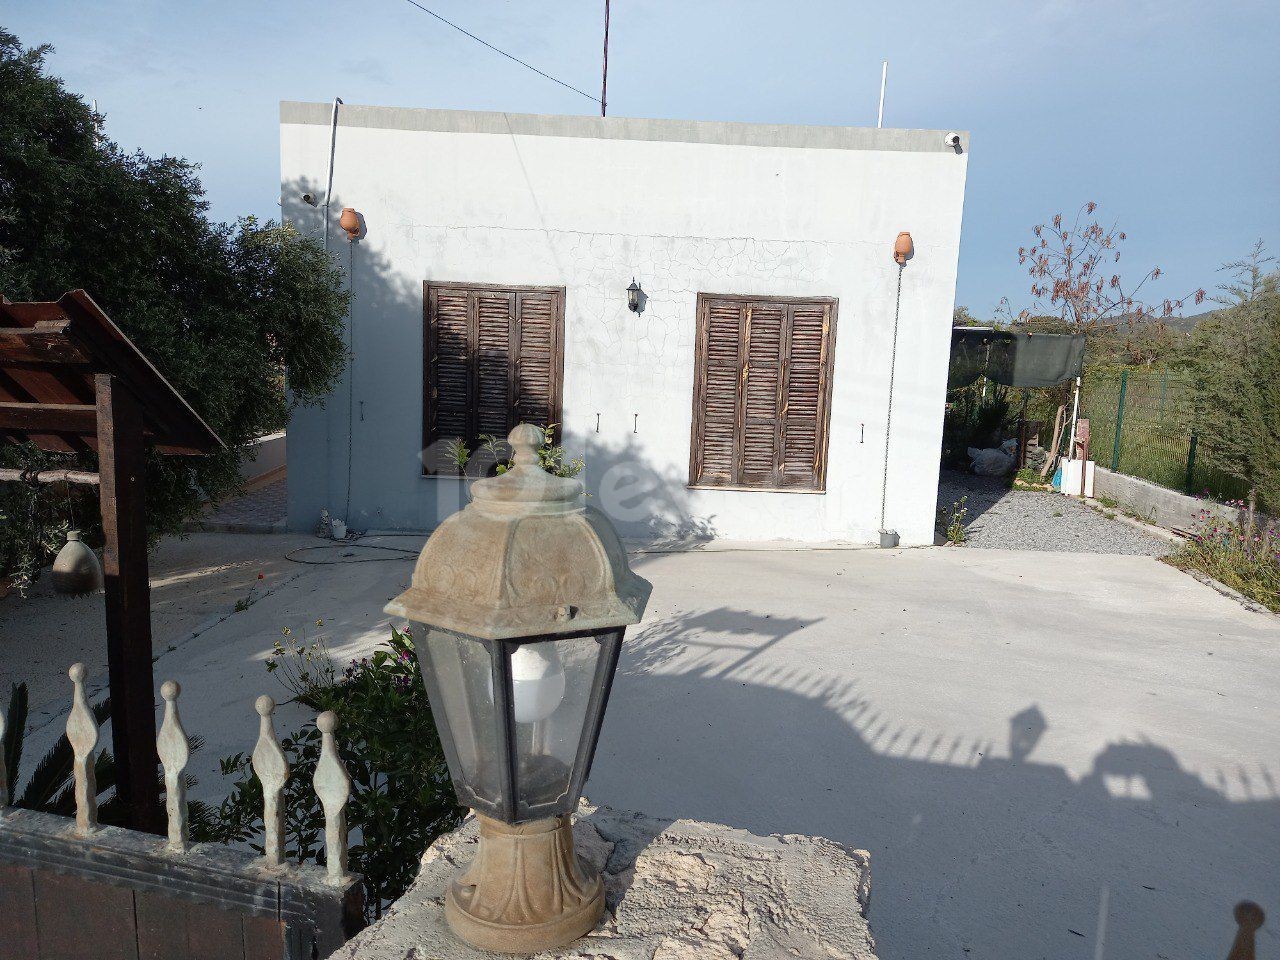 یک خانه 2+1 نوساز در محیطی دنج و آرام در روستای سپاهی به فروش می رسد.